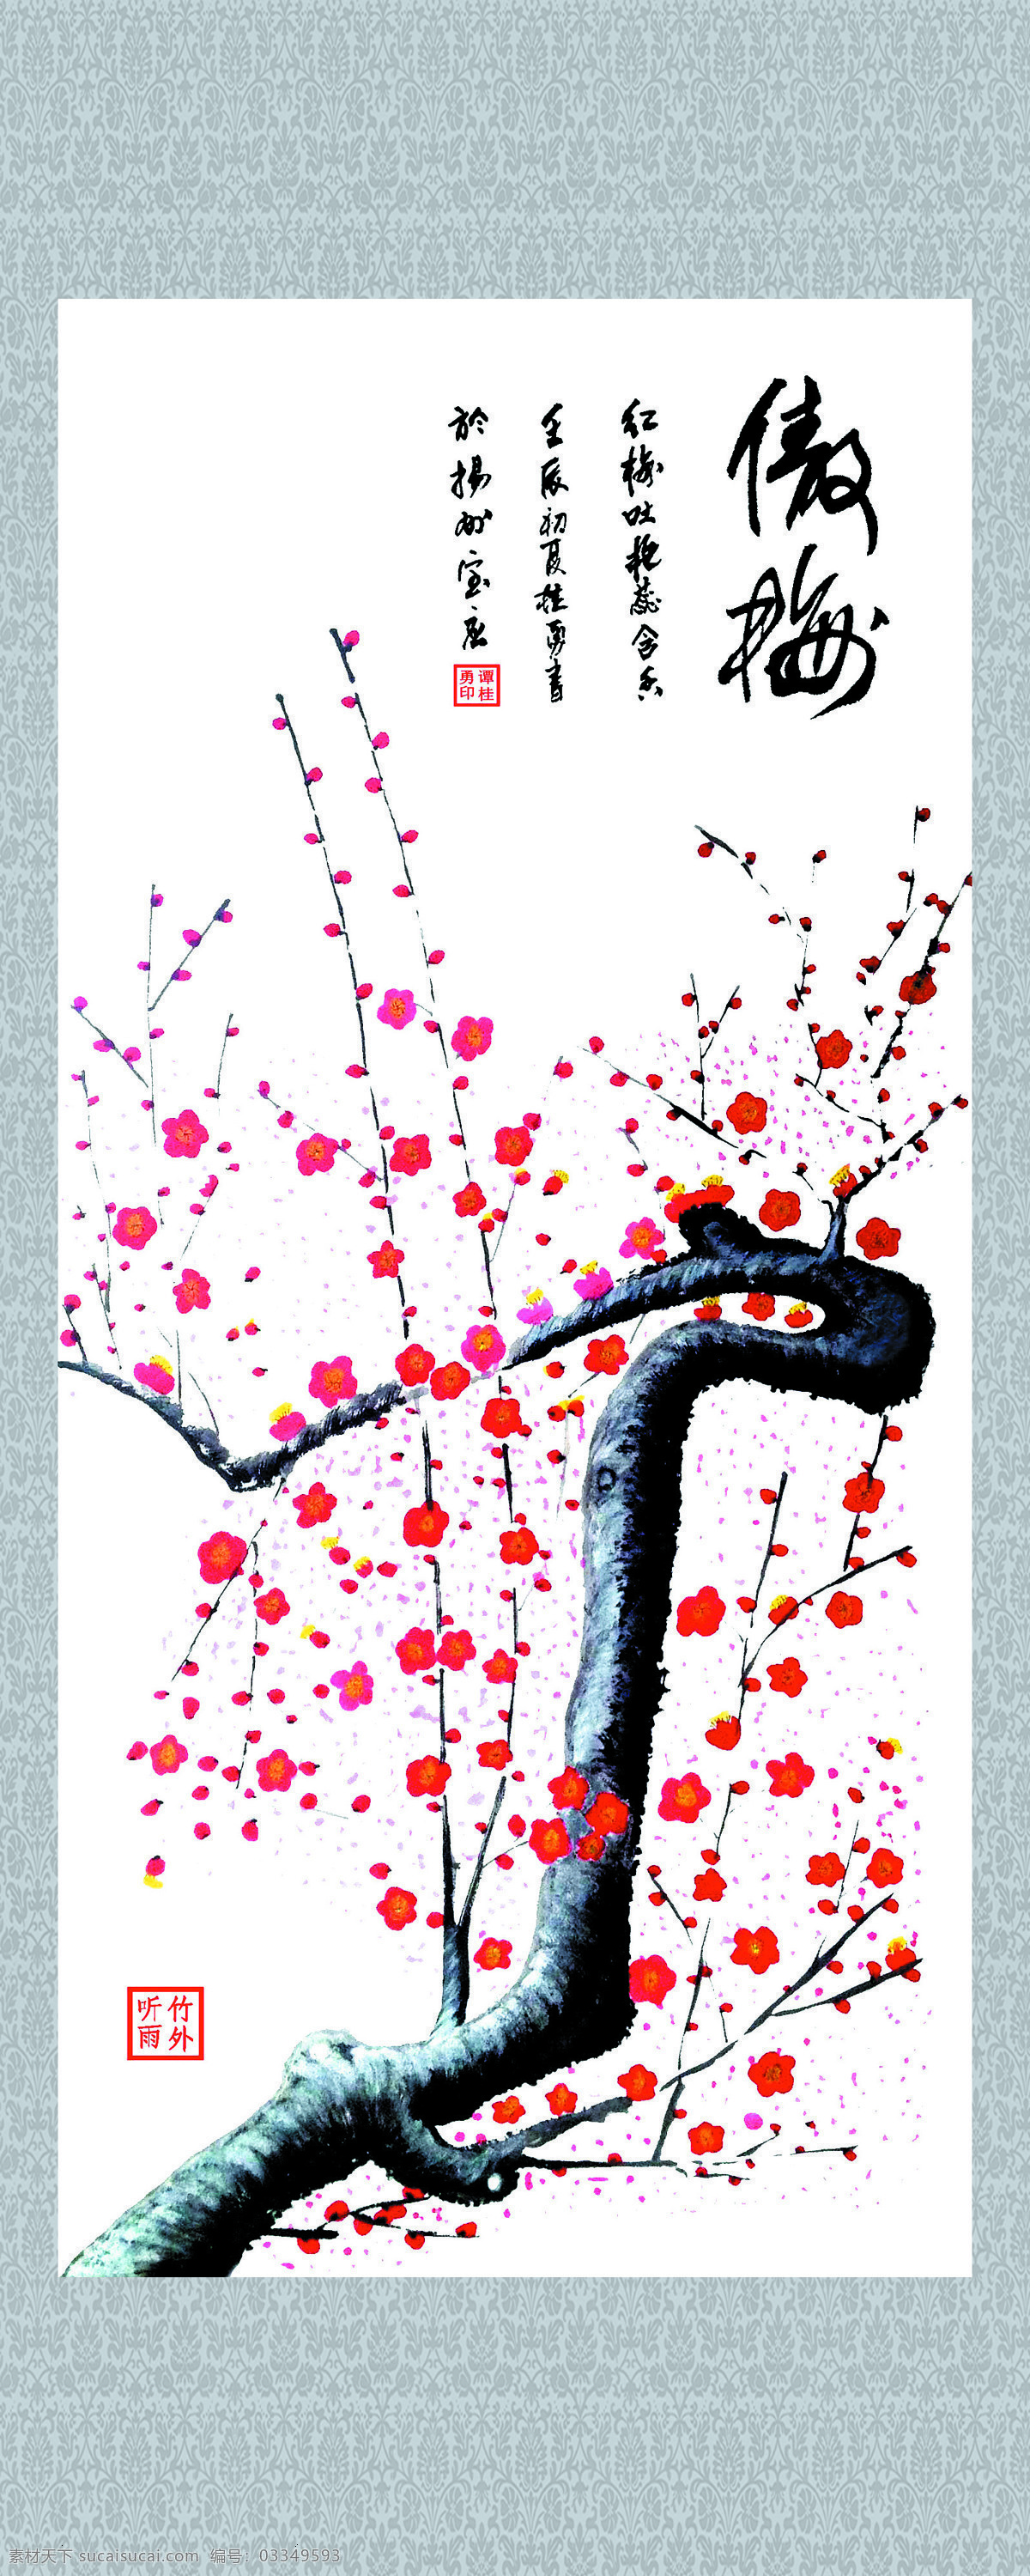 梅花图 美术 中国画 花卉画 梅花 红梅 国画梅花 国画集124 文化艺术 绘画书法